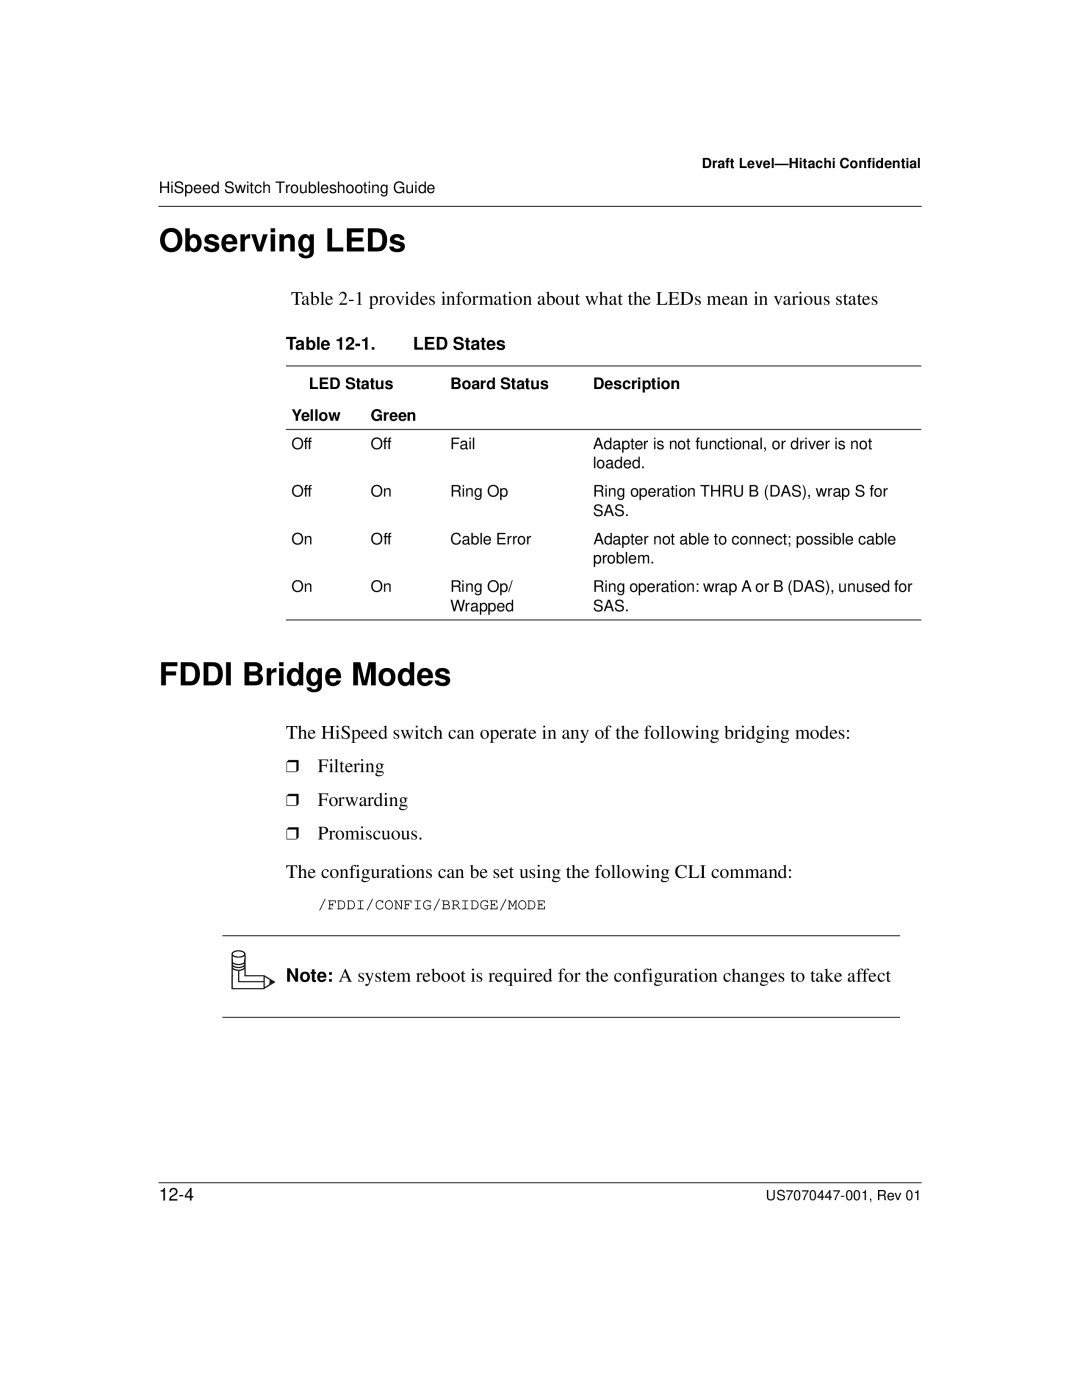 Hitachi US7070447-001 manual FDDI Bridge Modes, Observing LEDs 